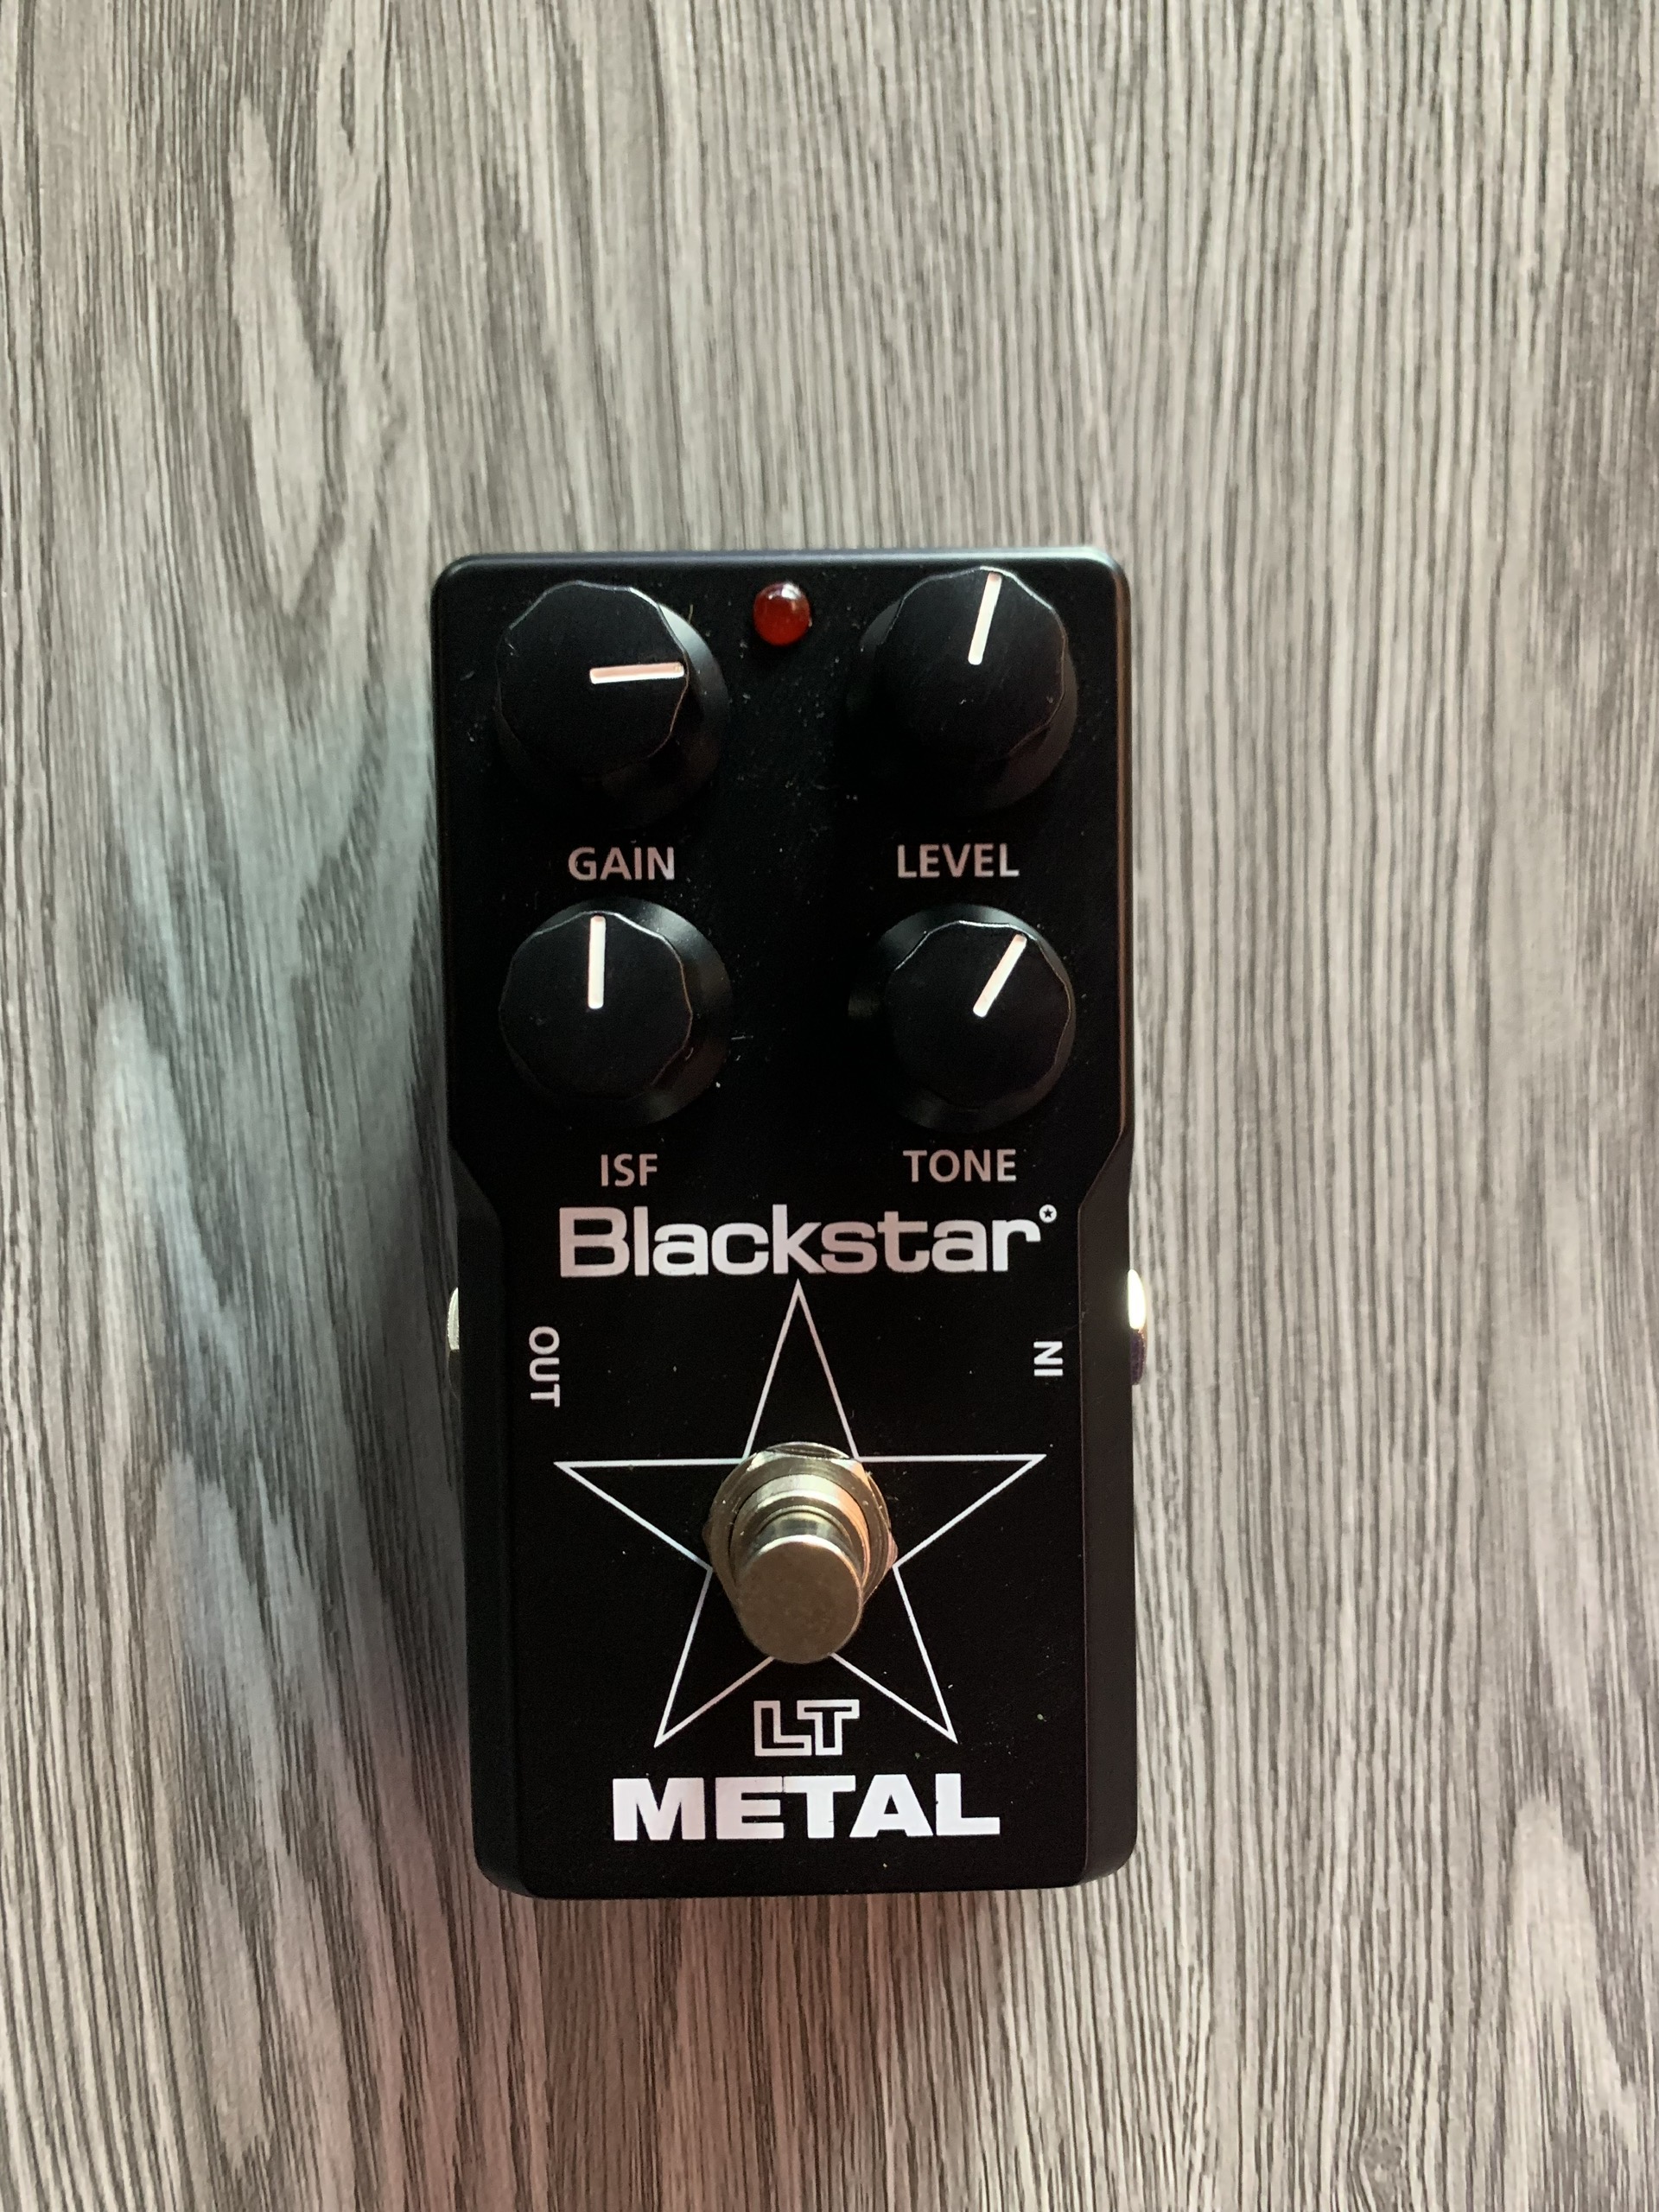 Fuzz Blackstar model LT Metal